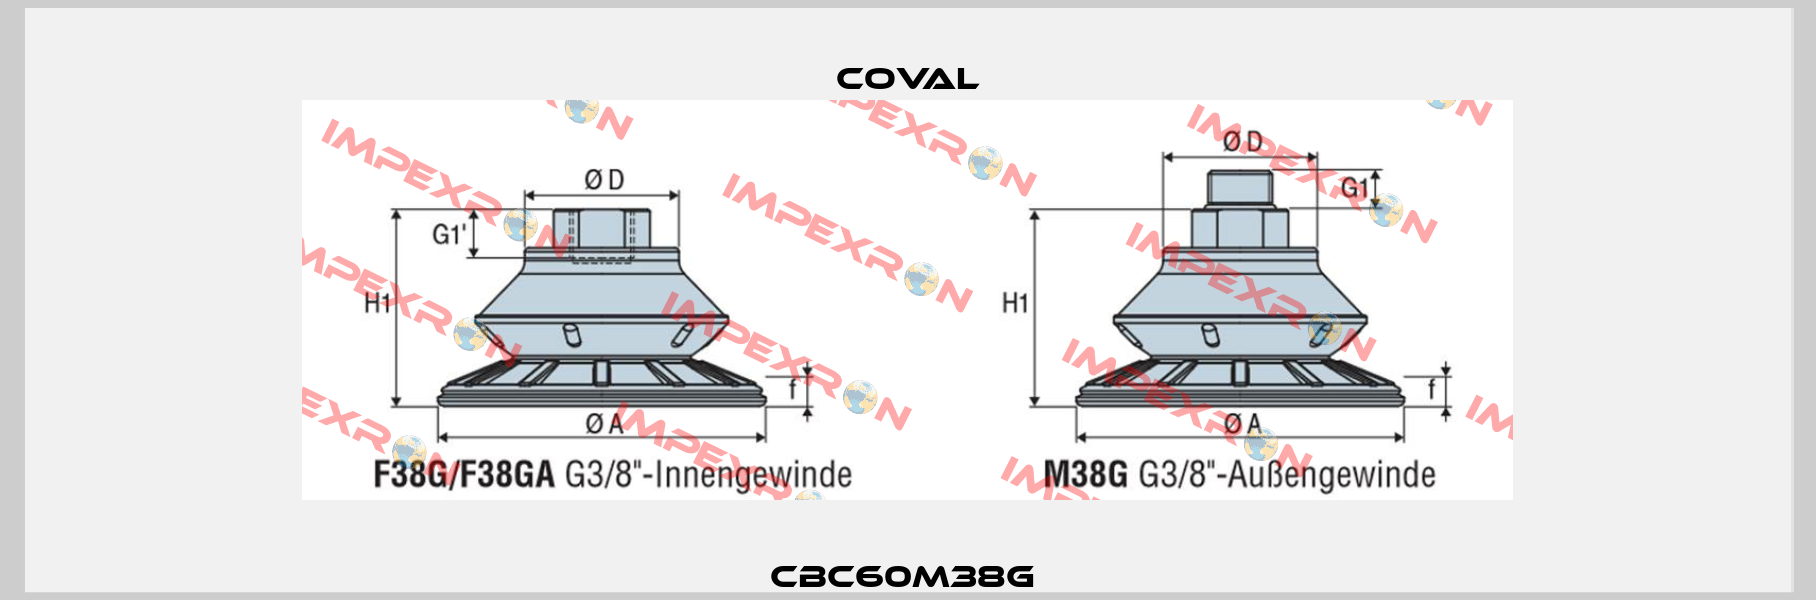 CBC60M38G  Coval